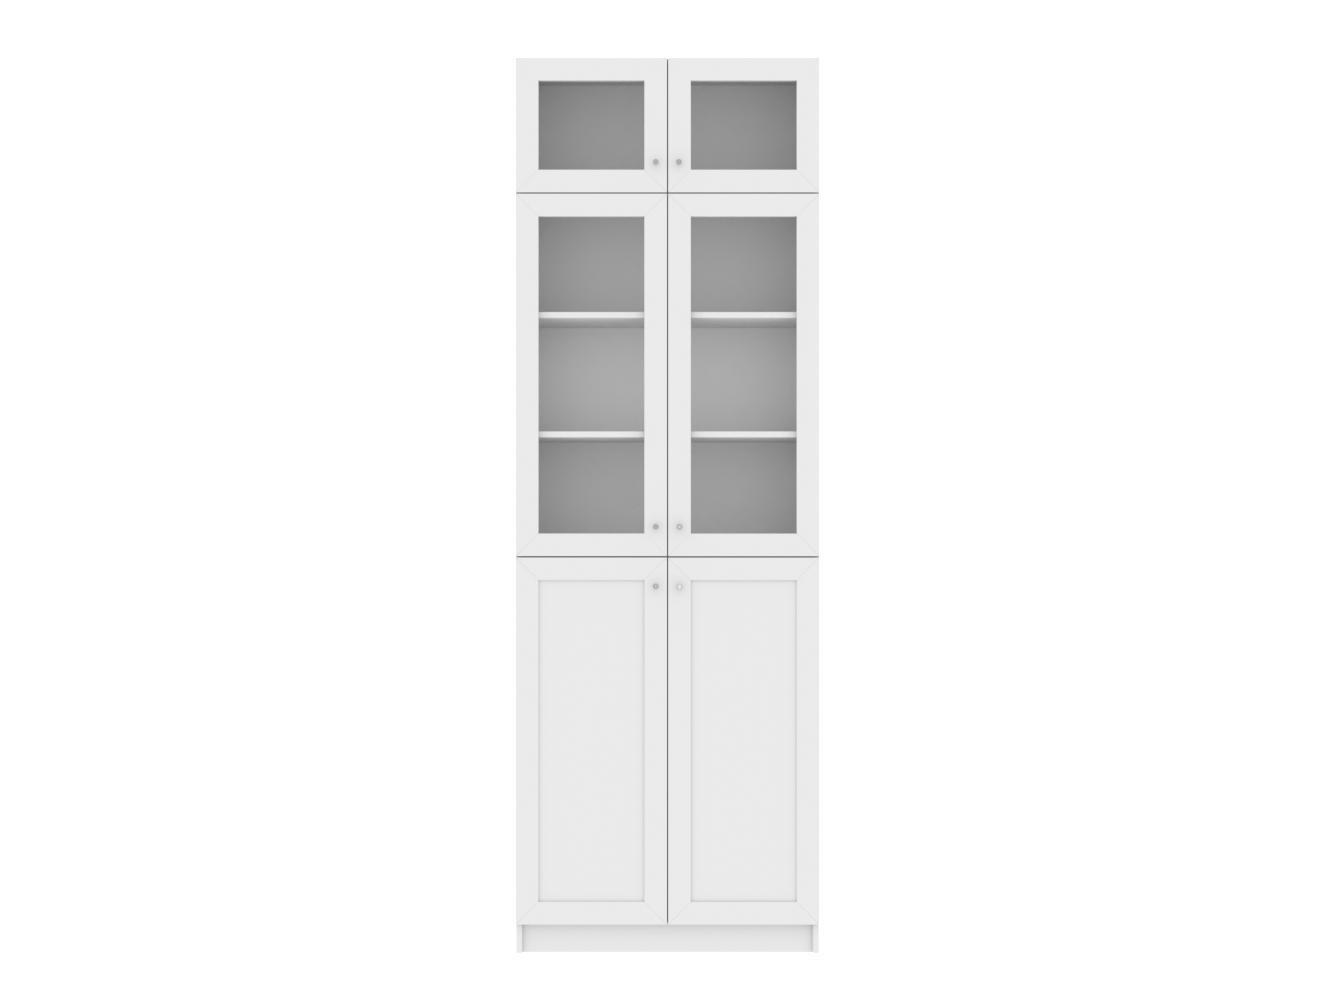 Изображение товара Книжный шкаф Билли 36 white ИКЕА (IKEA), 80x30x237 см на сайте adeta.ru